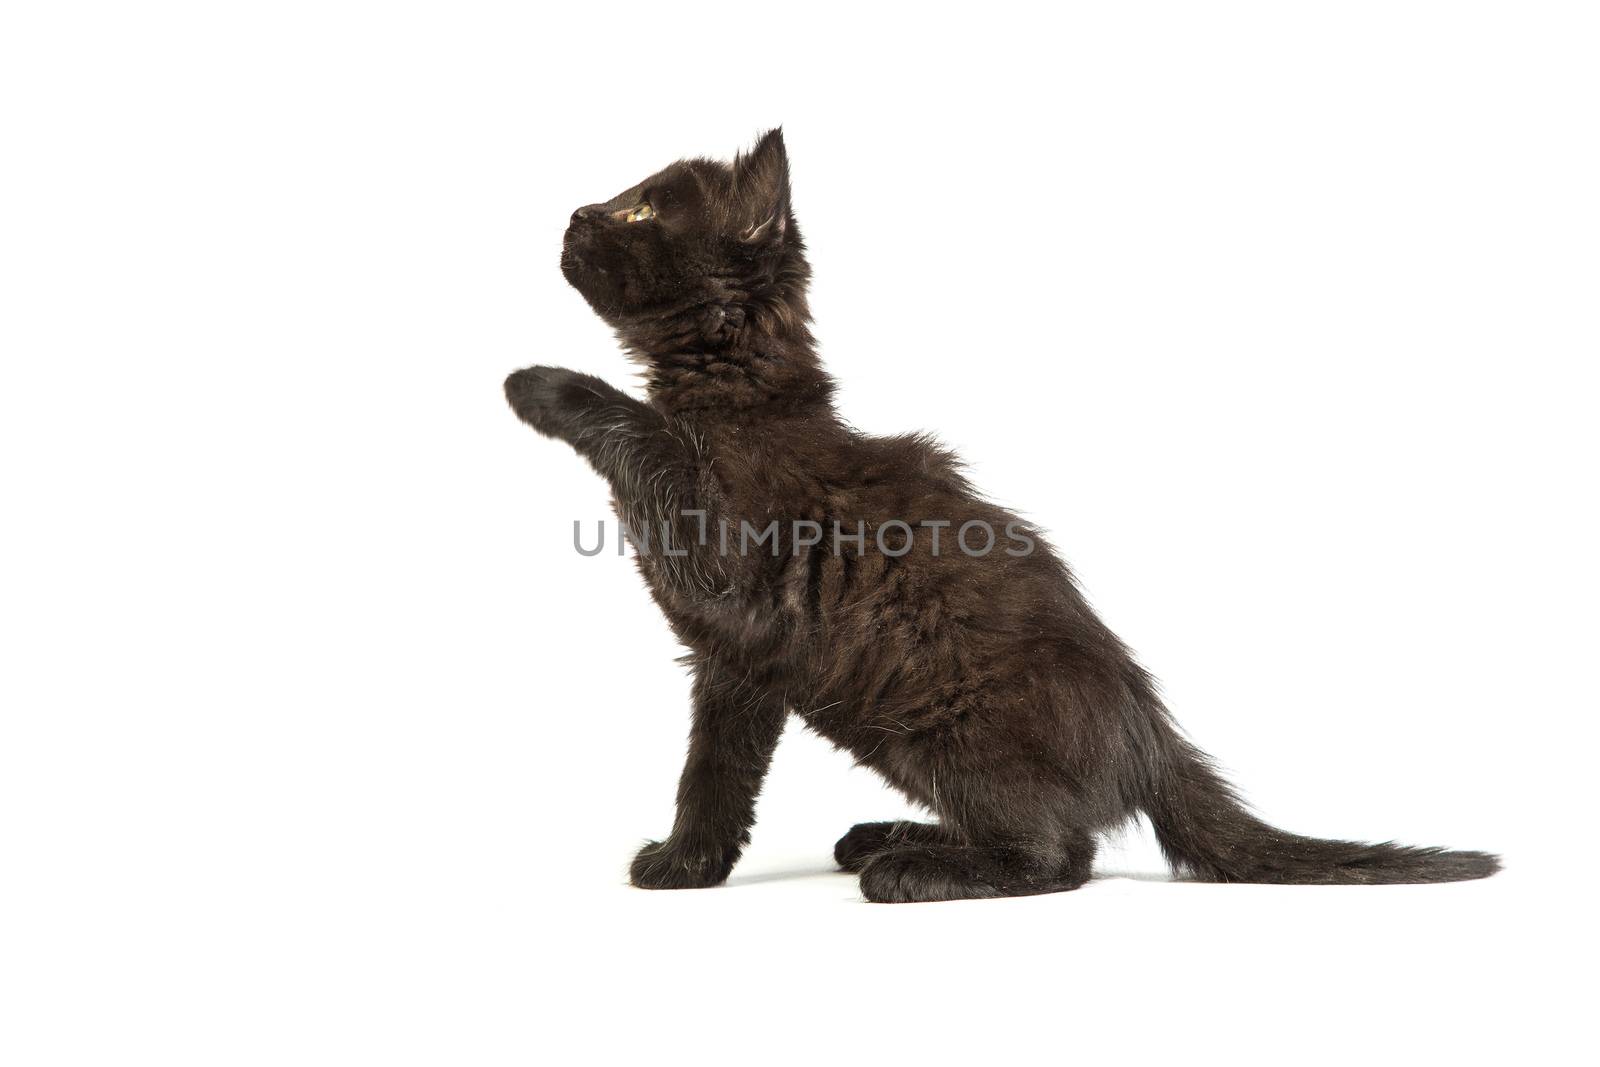 Cute black kitten on a white background by bloodua